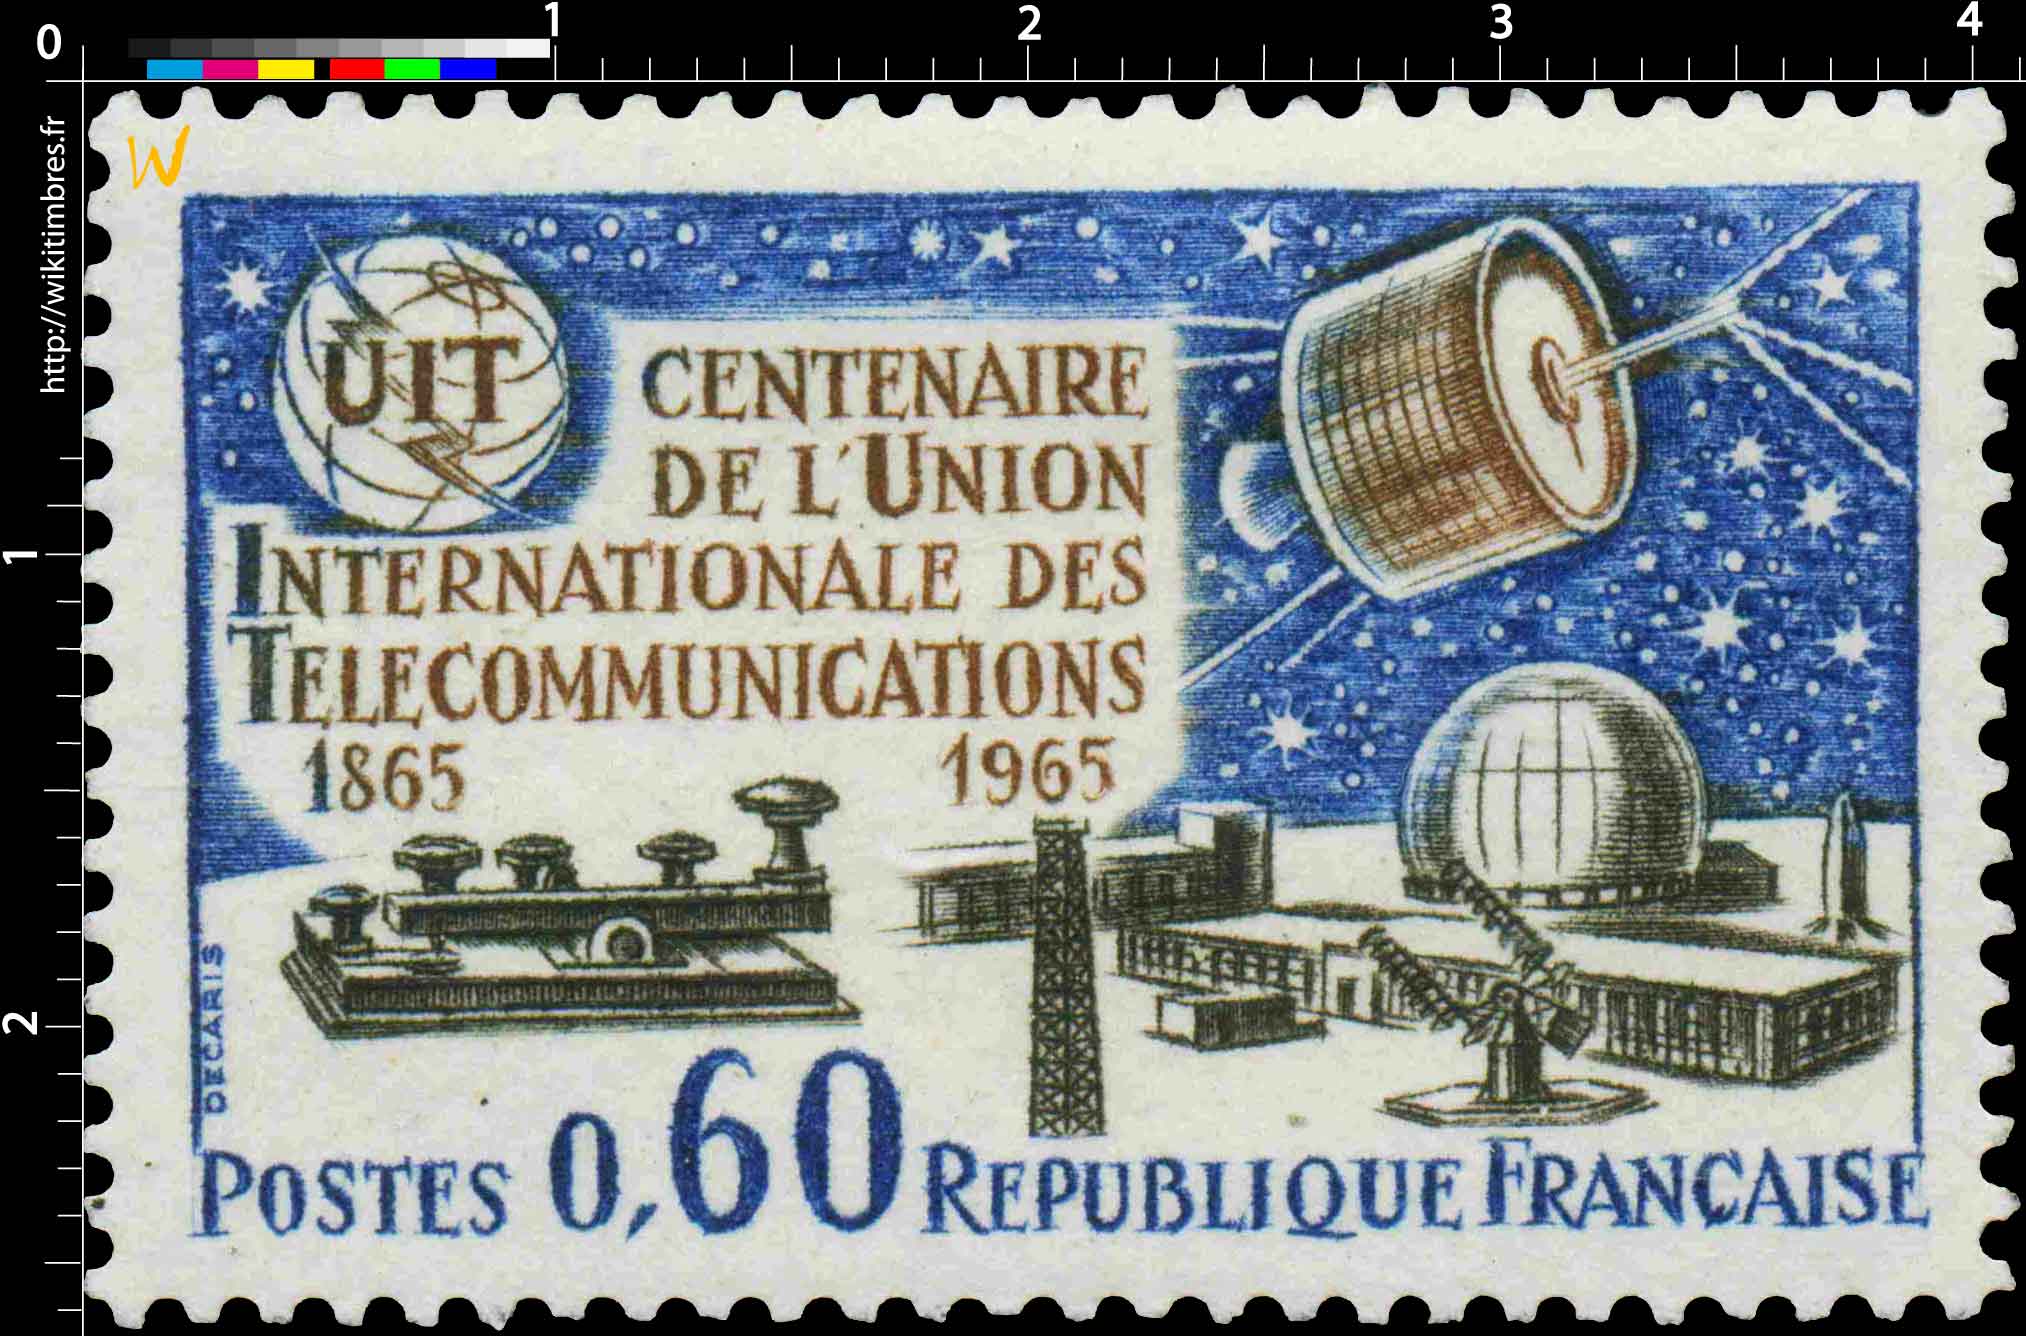 UIT CENTENAIRE DE L'UNION INTERNATIONALE DES TÉLÉCOMMUNICATIONS 1865-1965